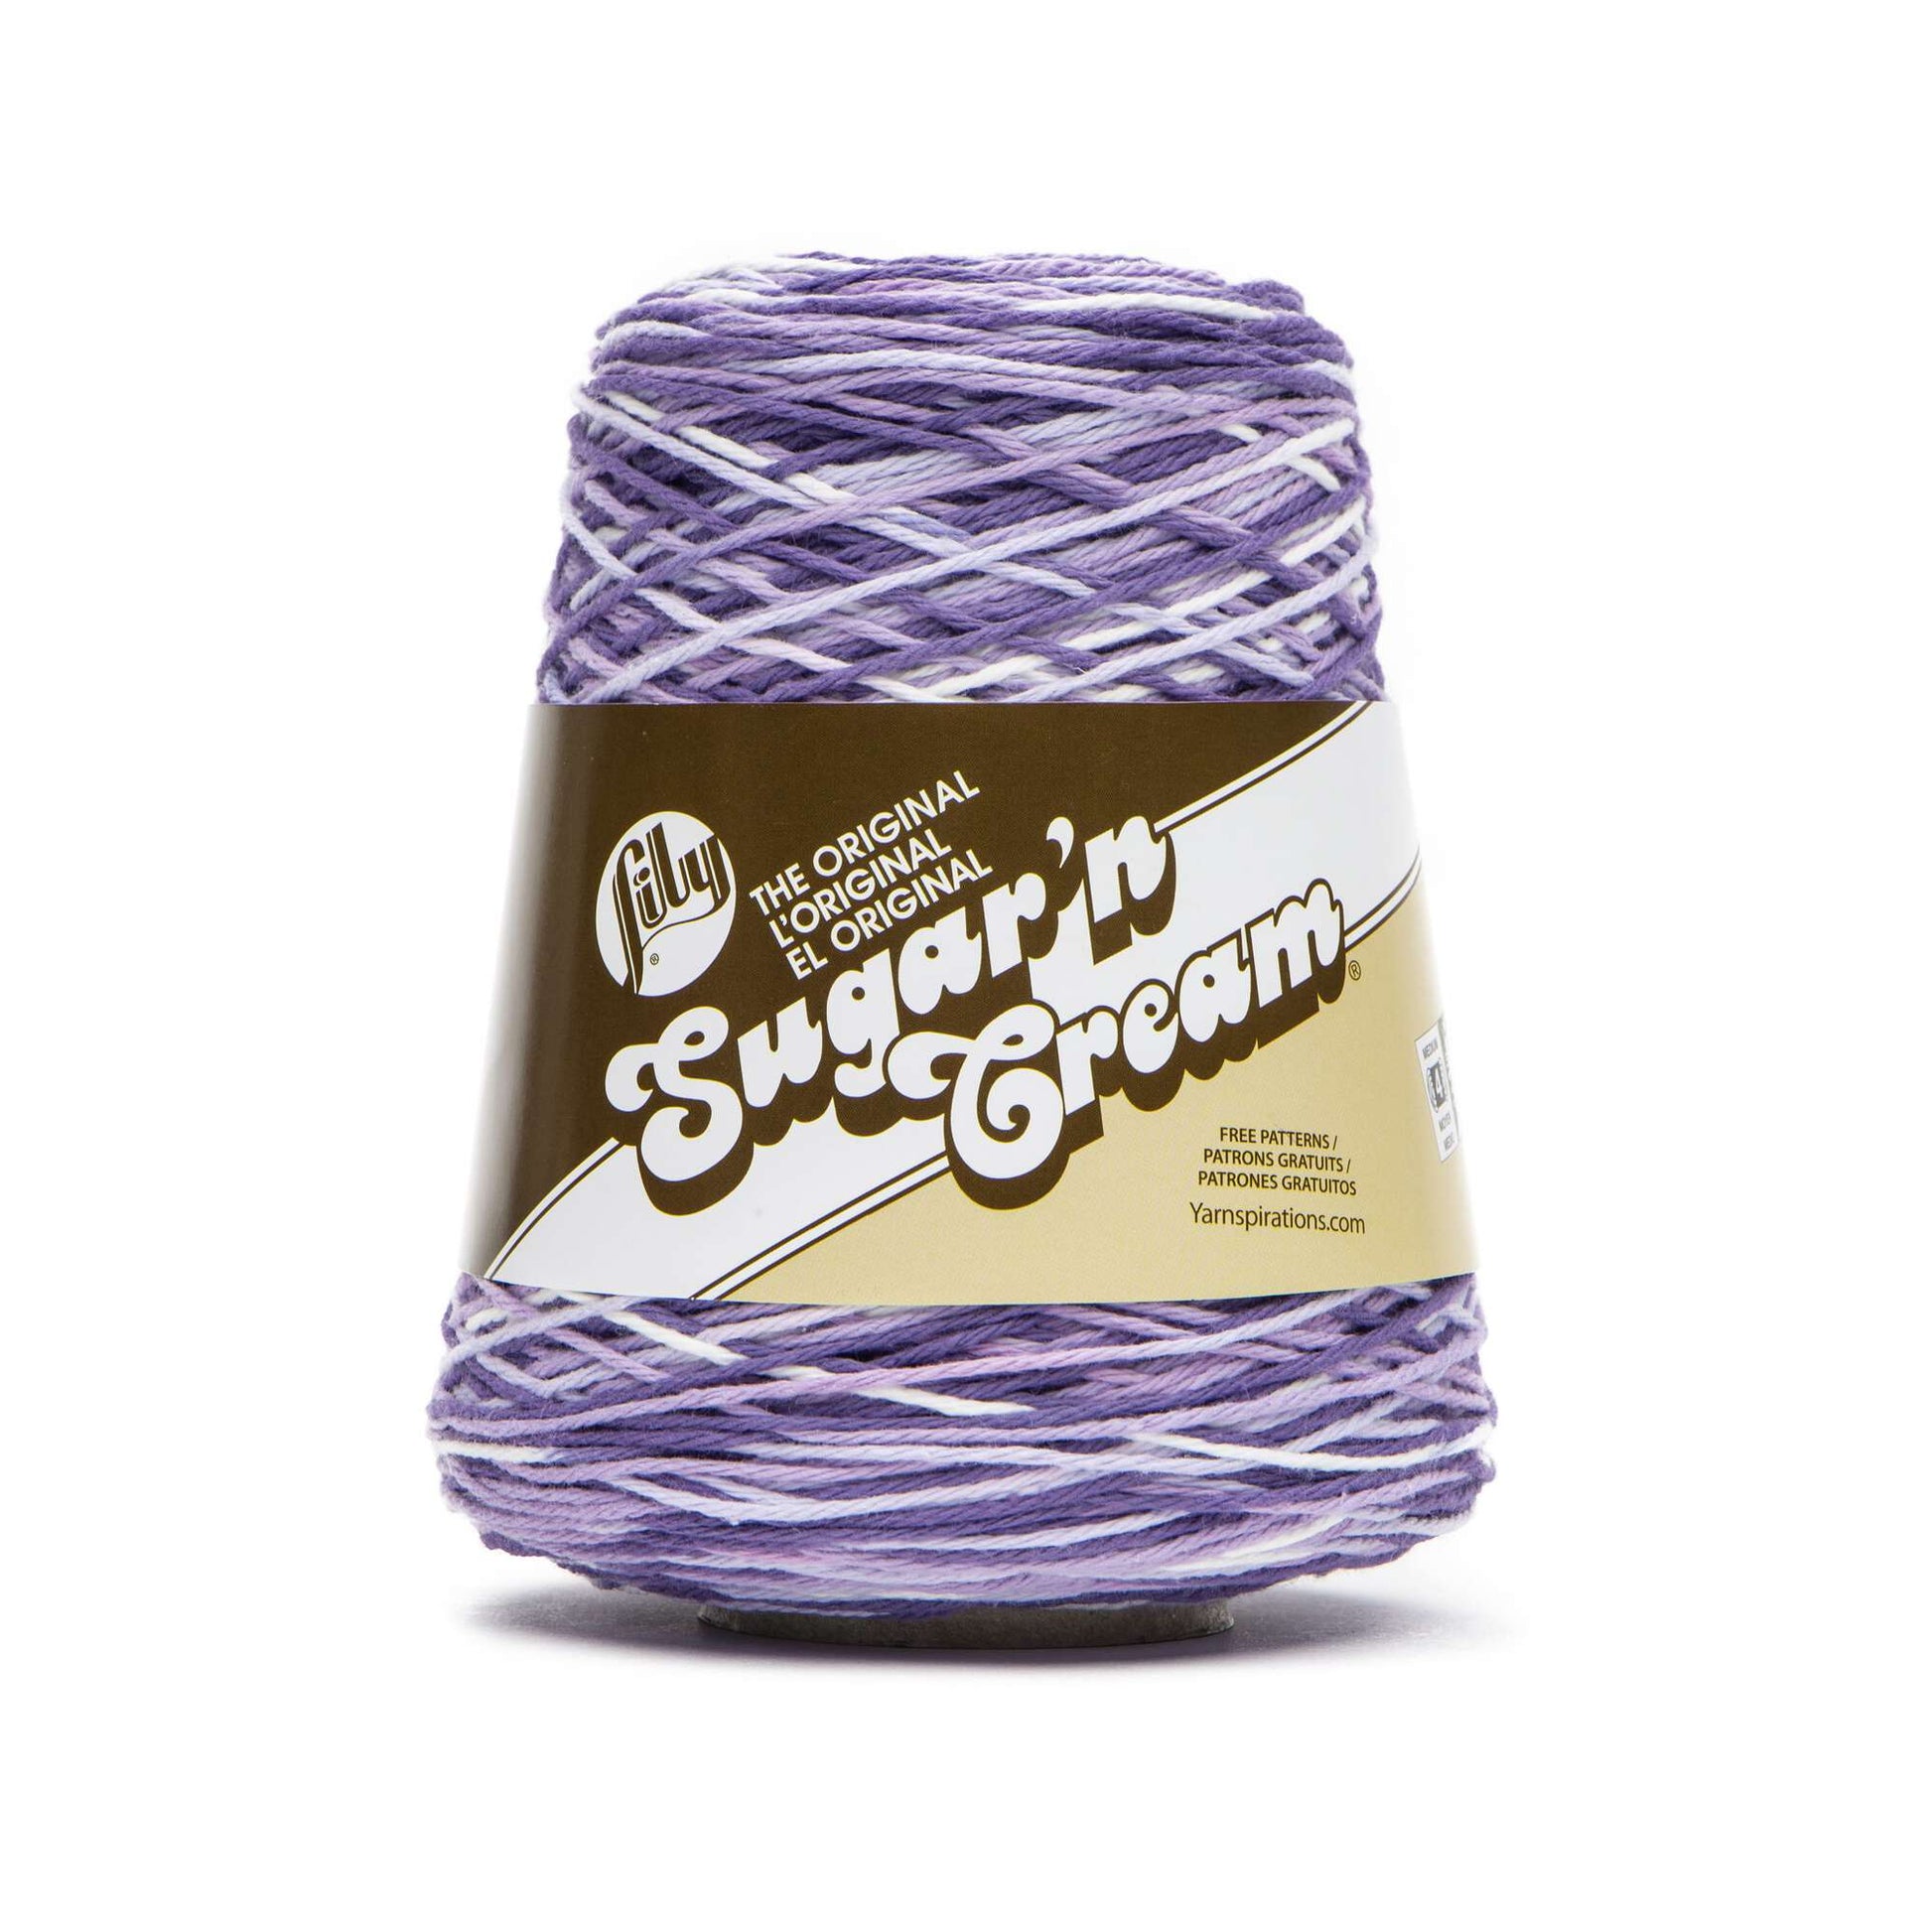 Lily - 10300202612 Sugar'n Cream Cotton Cone Yarn, 14 oz, Kitchen Breeze  Ombre, 1 Cone